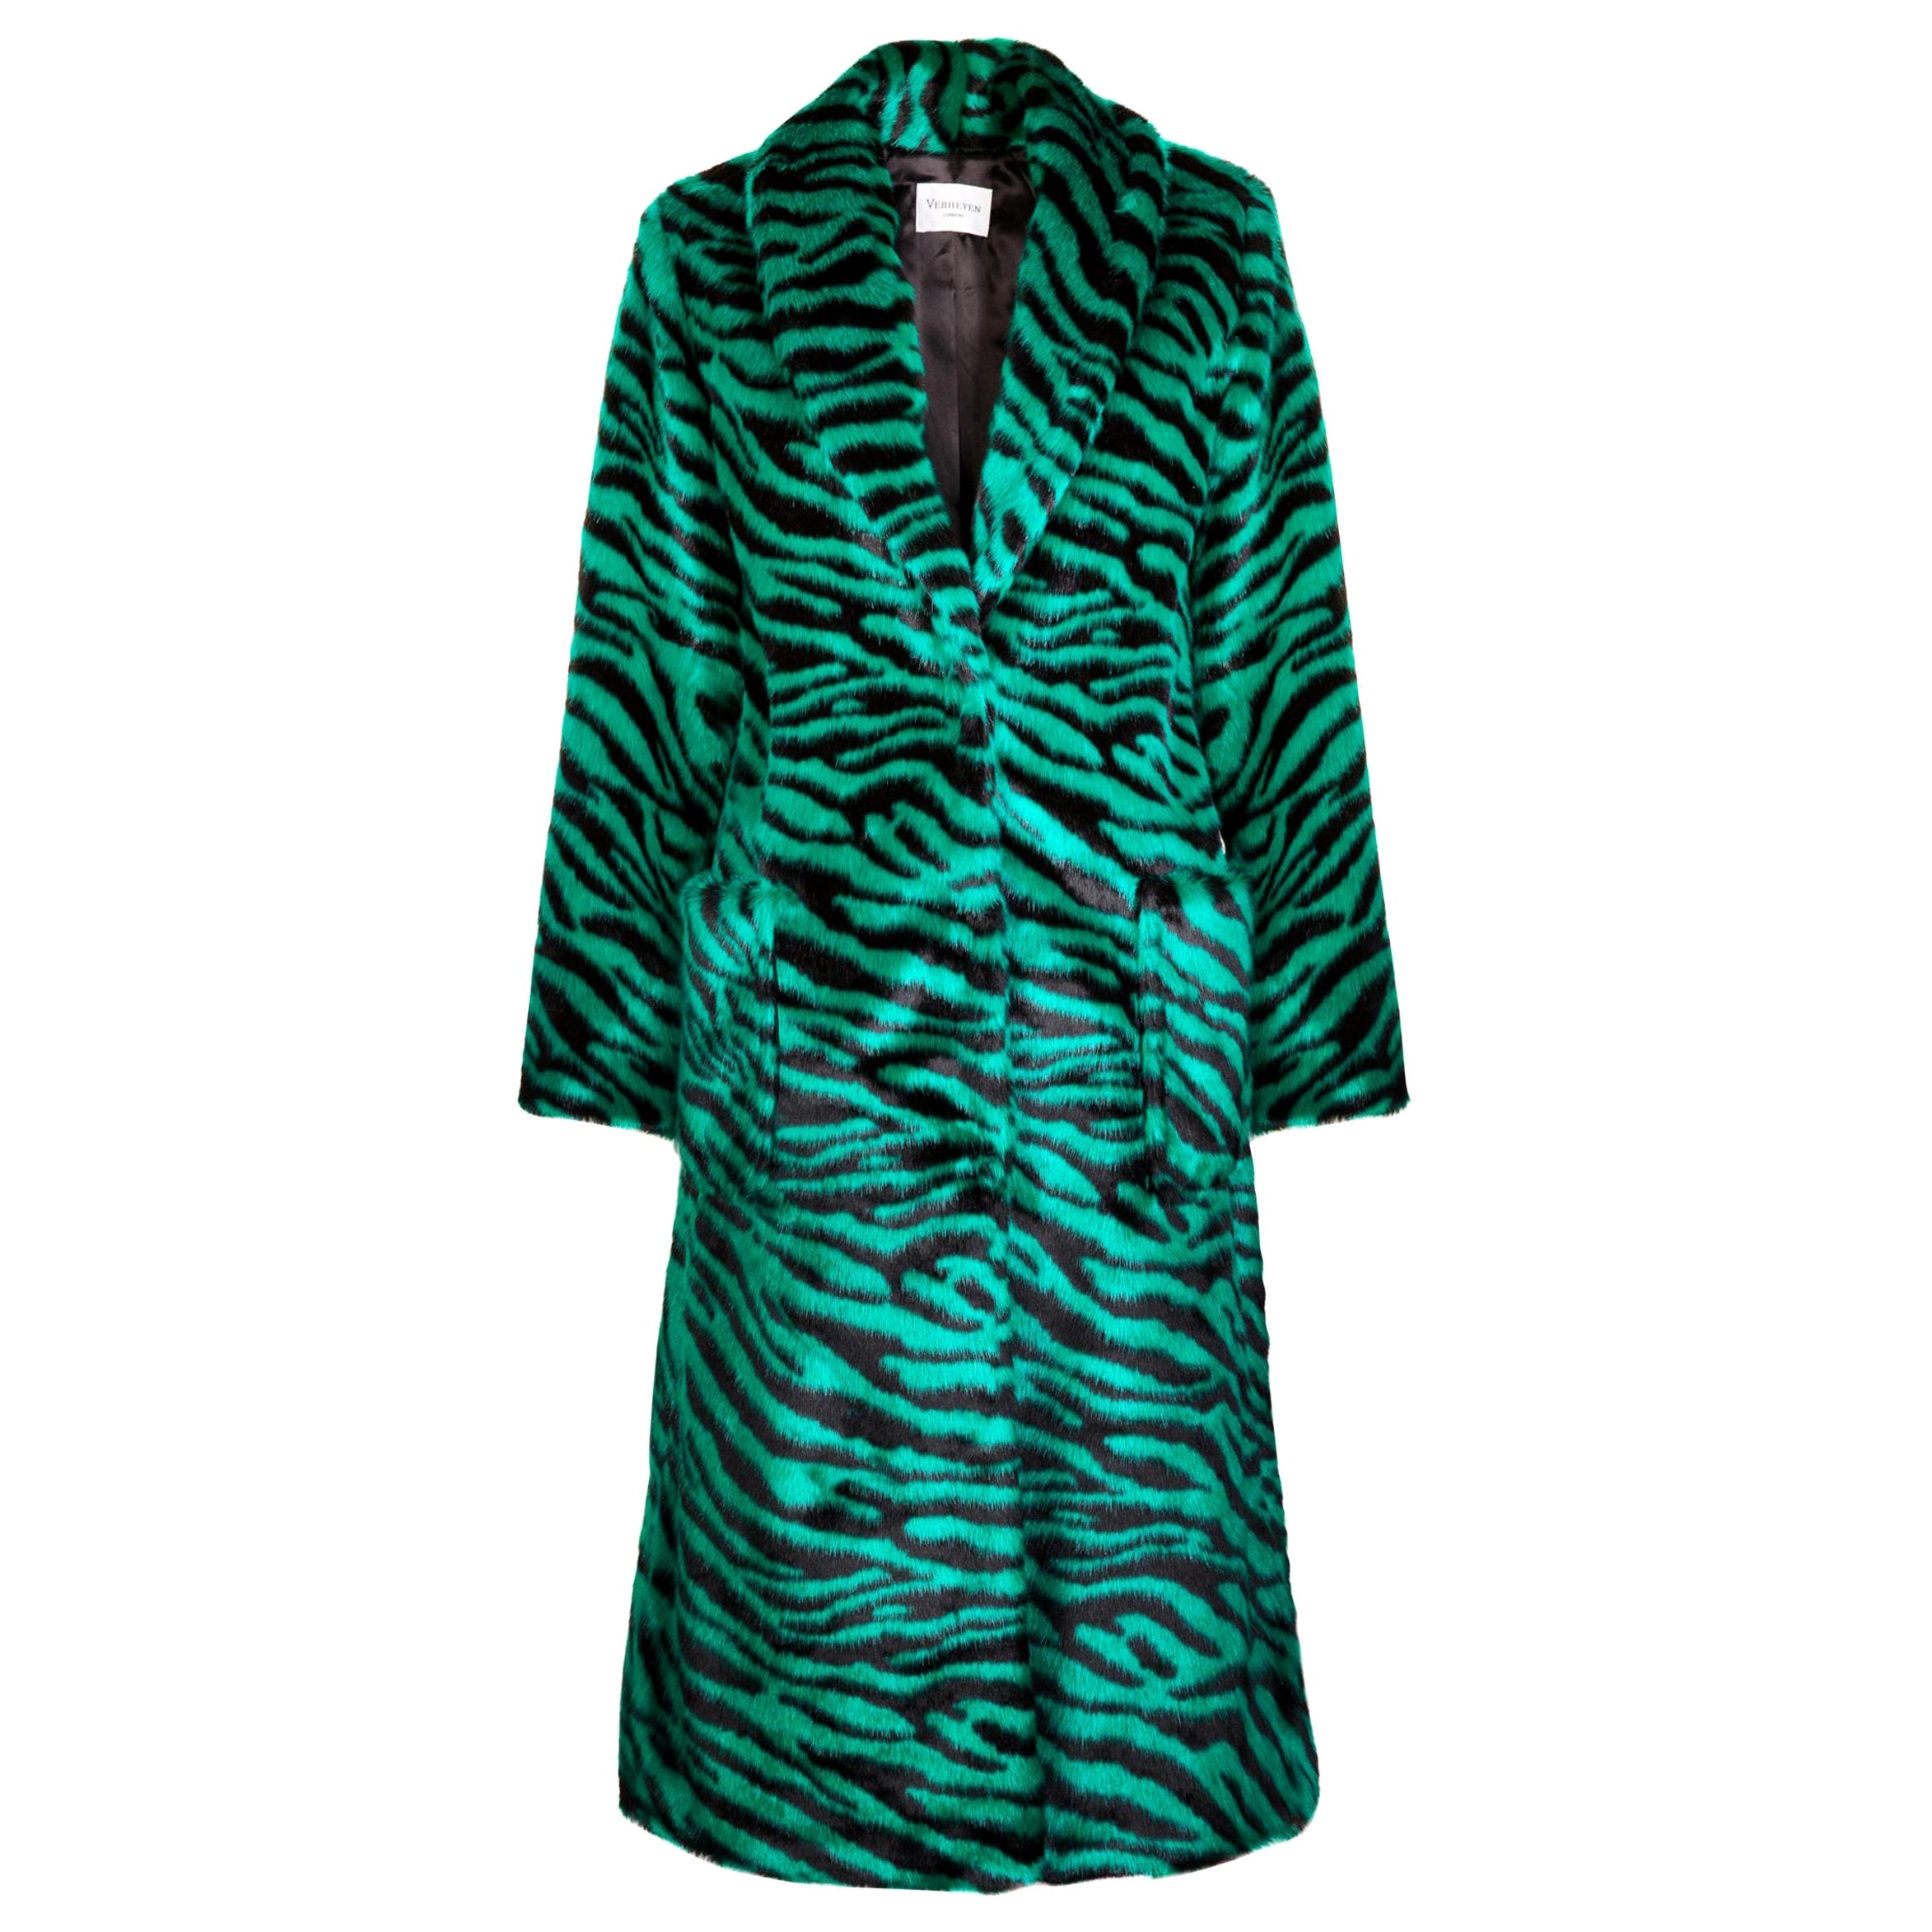 Verheyen London Esmeralda Faux Fur Coat in Emerald Green Zebra Print size uk 12